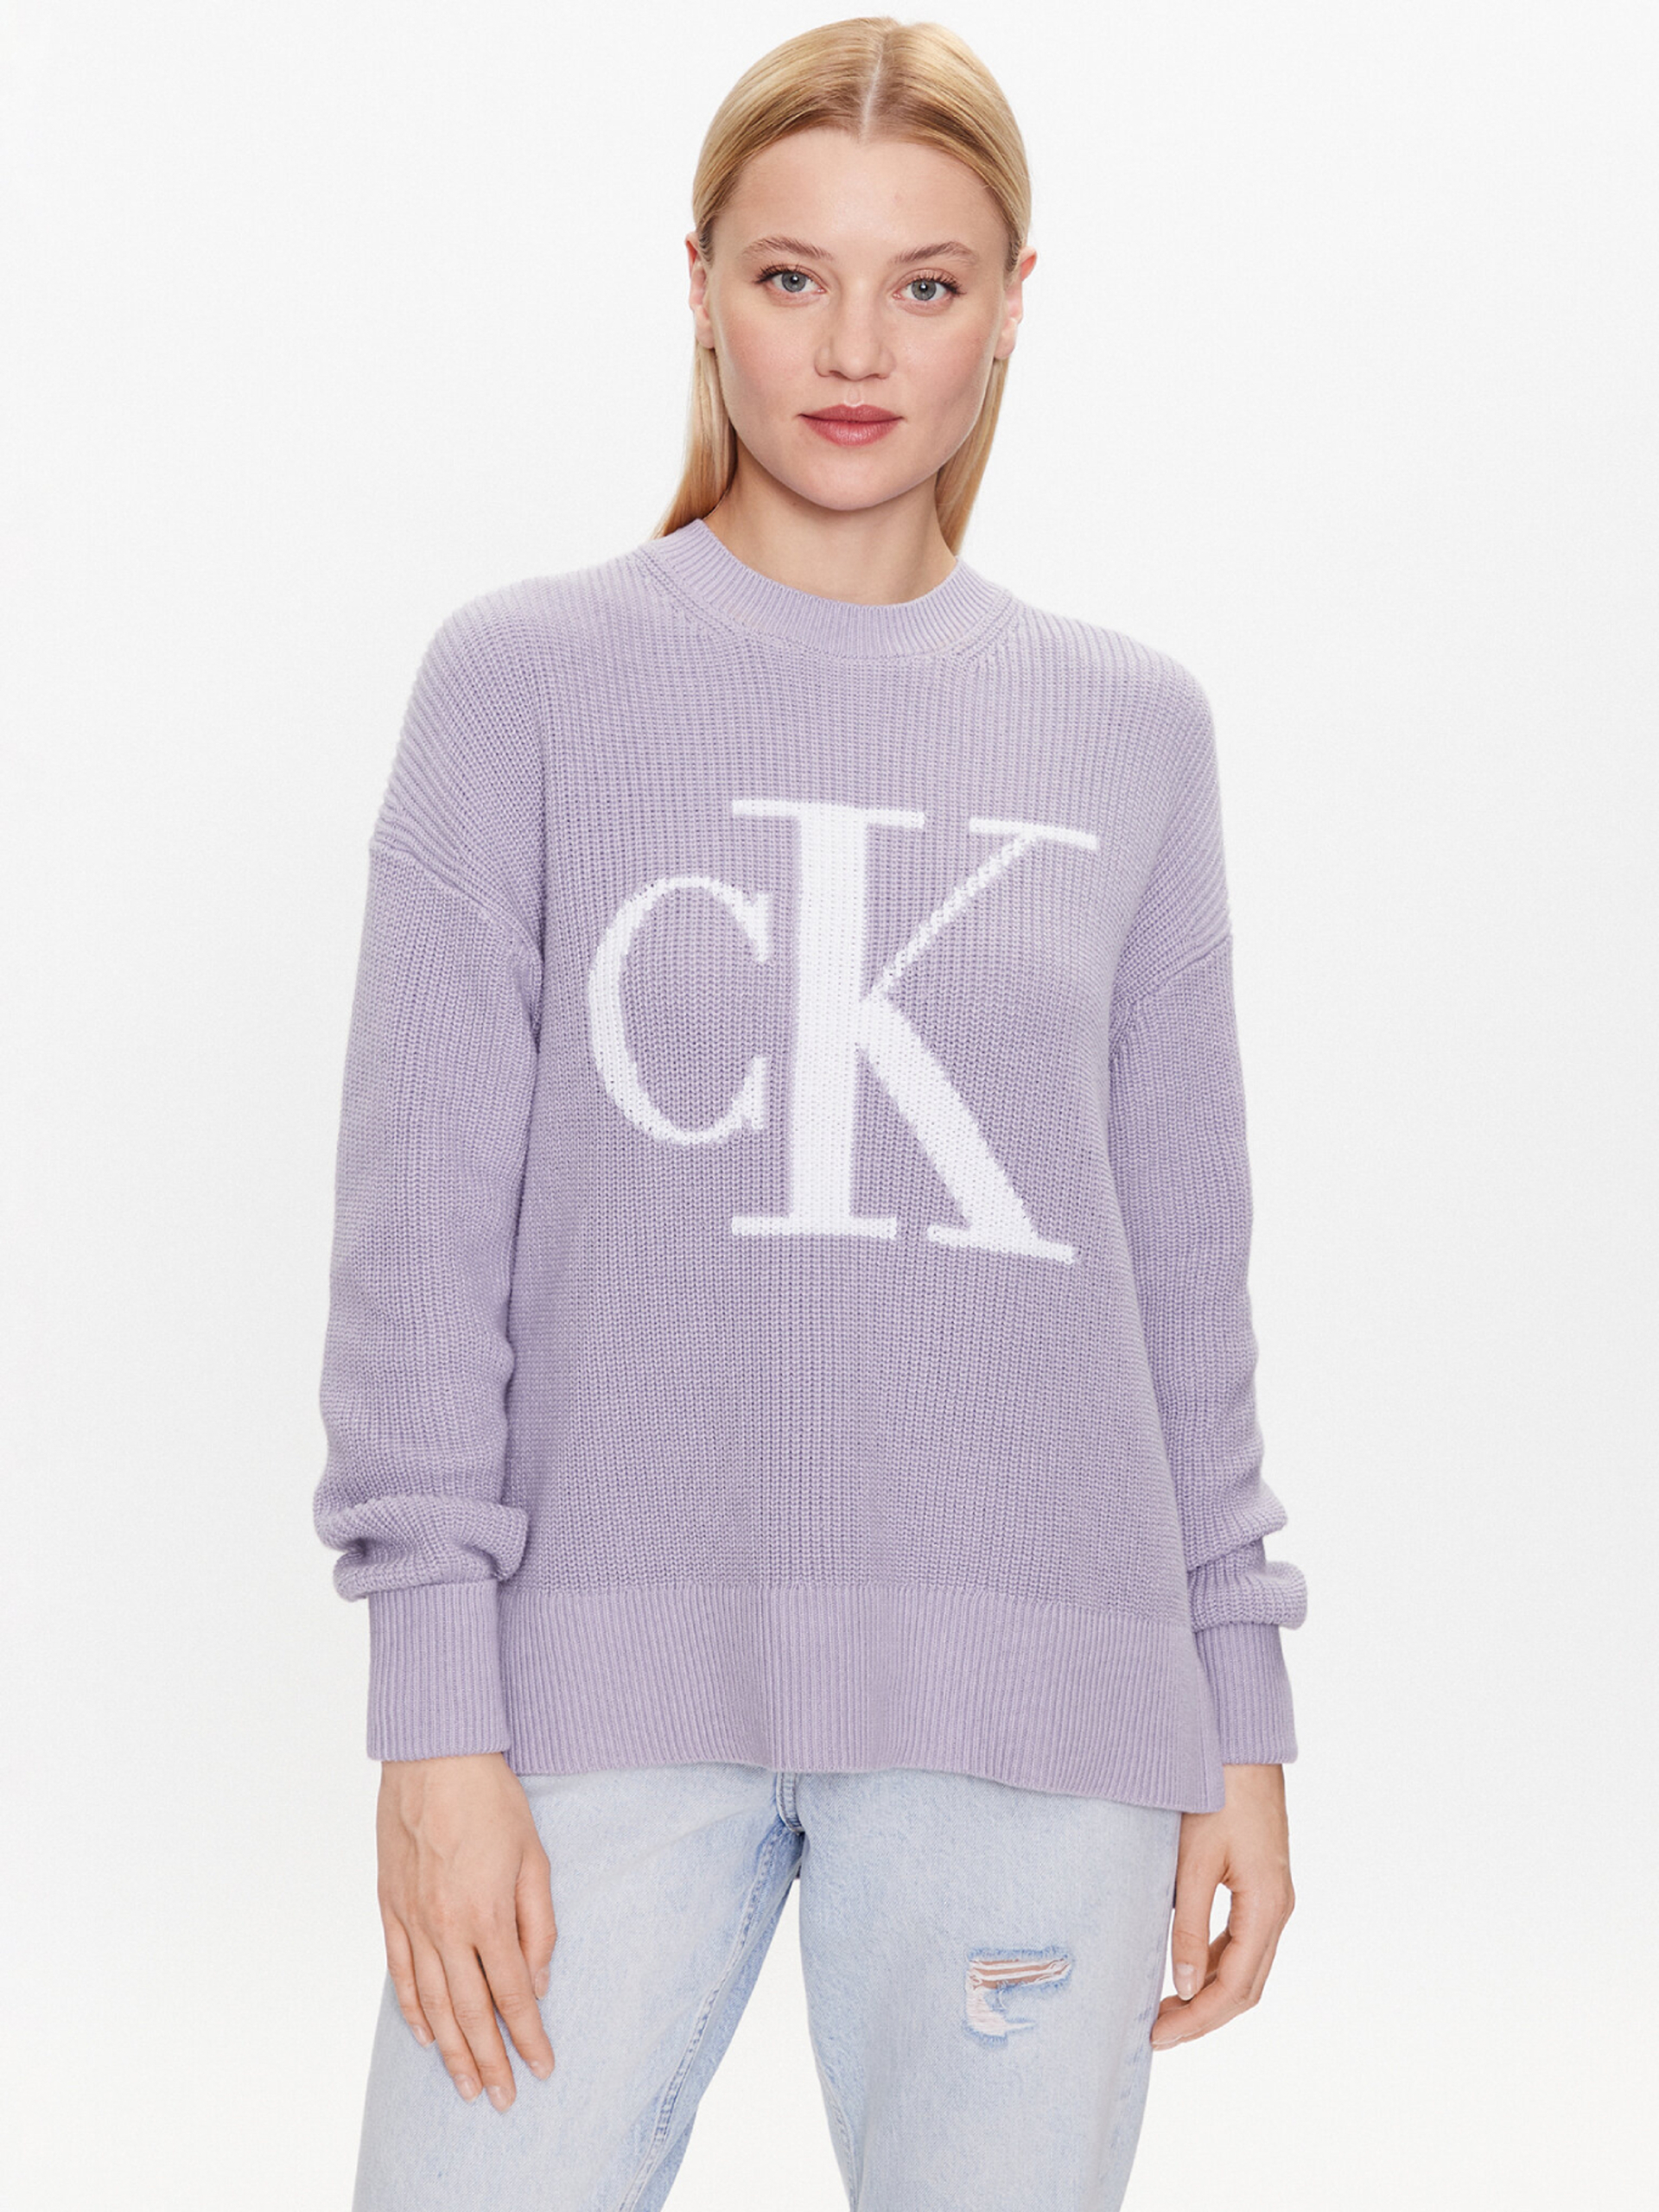 Calvin Klein dámský fialový svetr - XS (PC1)